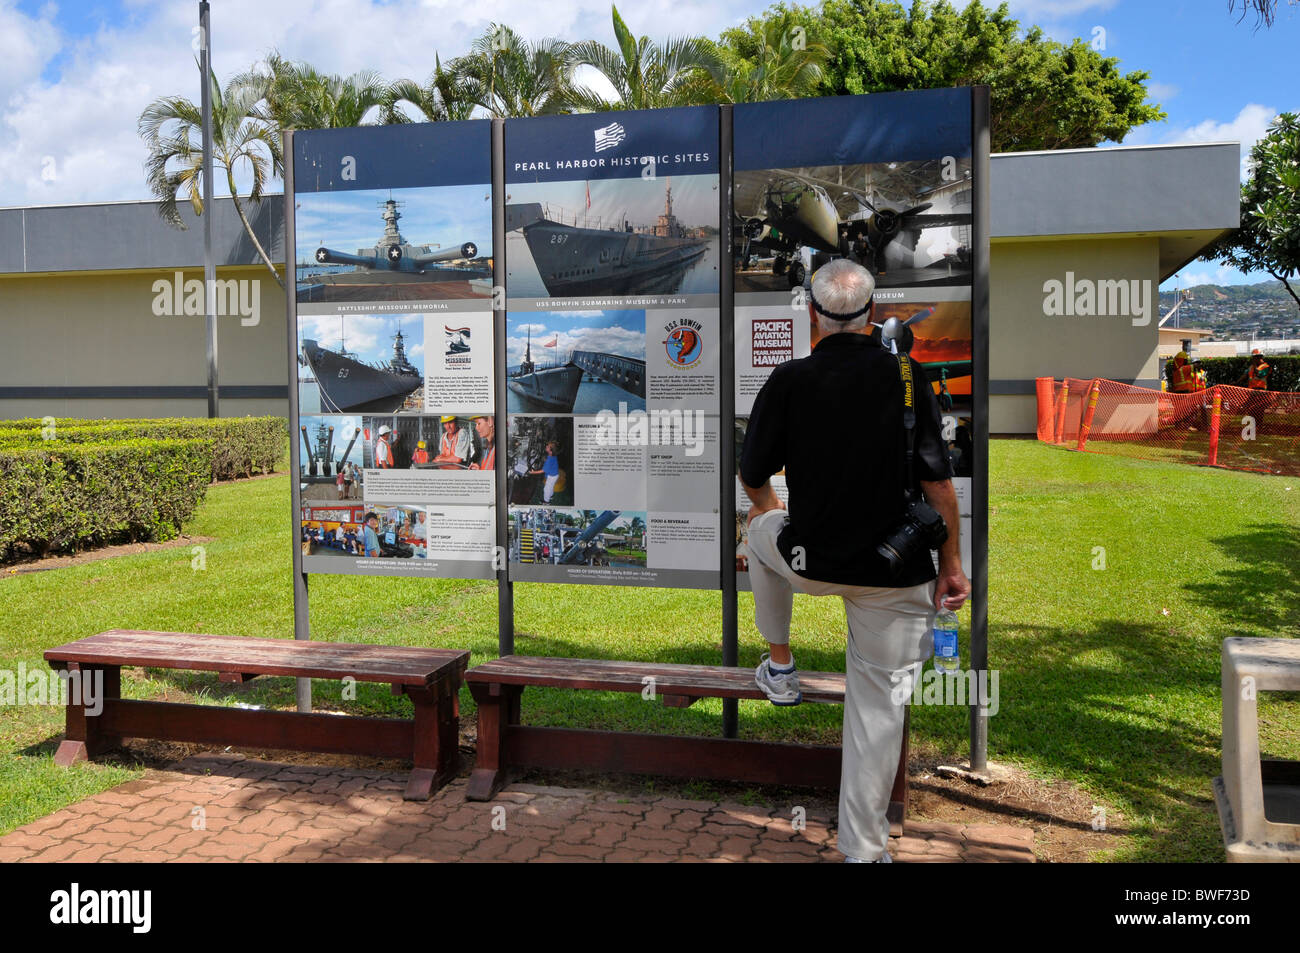 L'homme ressemble à Pearl Harbor, Hawaii Sites sur Afficher Banque D'Images